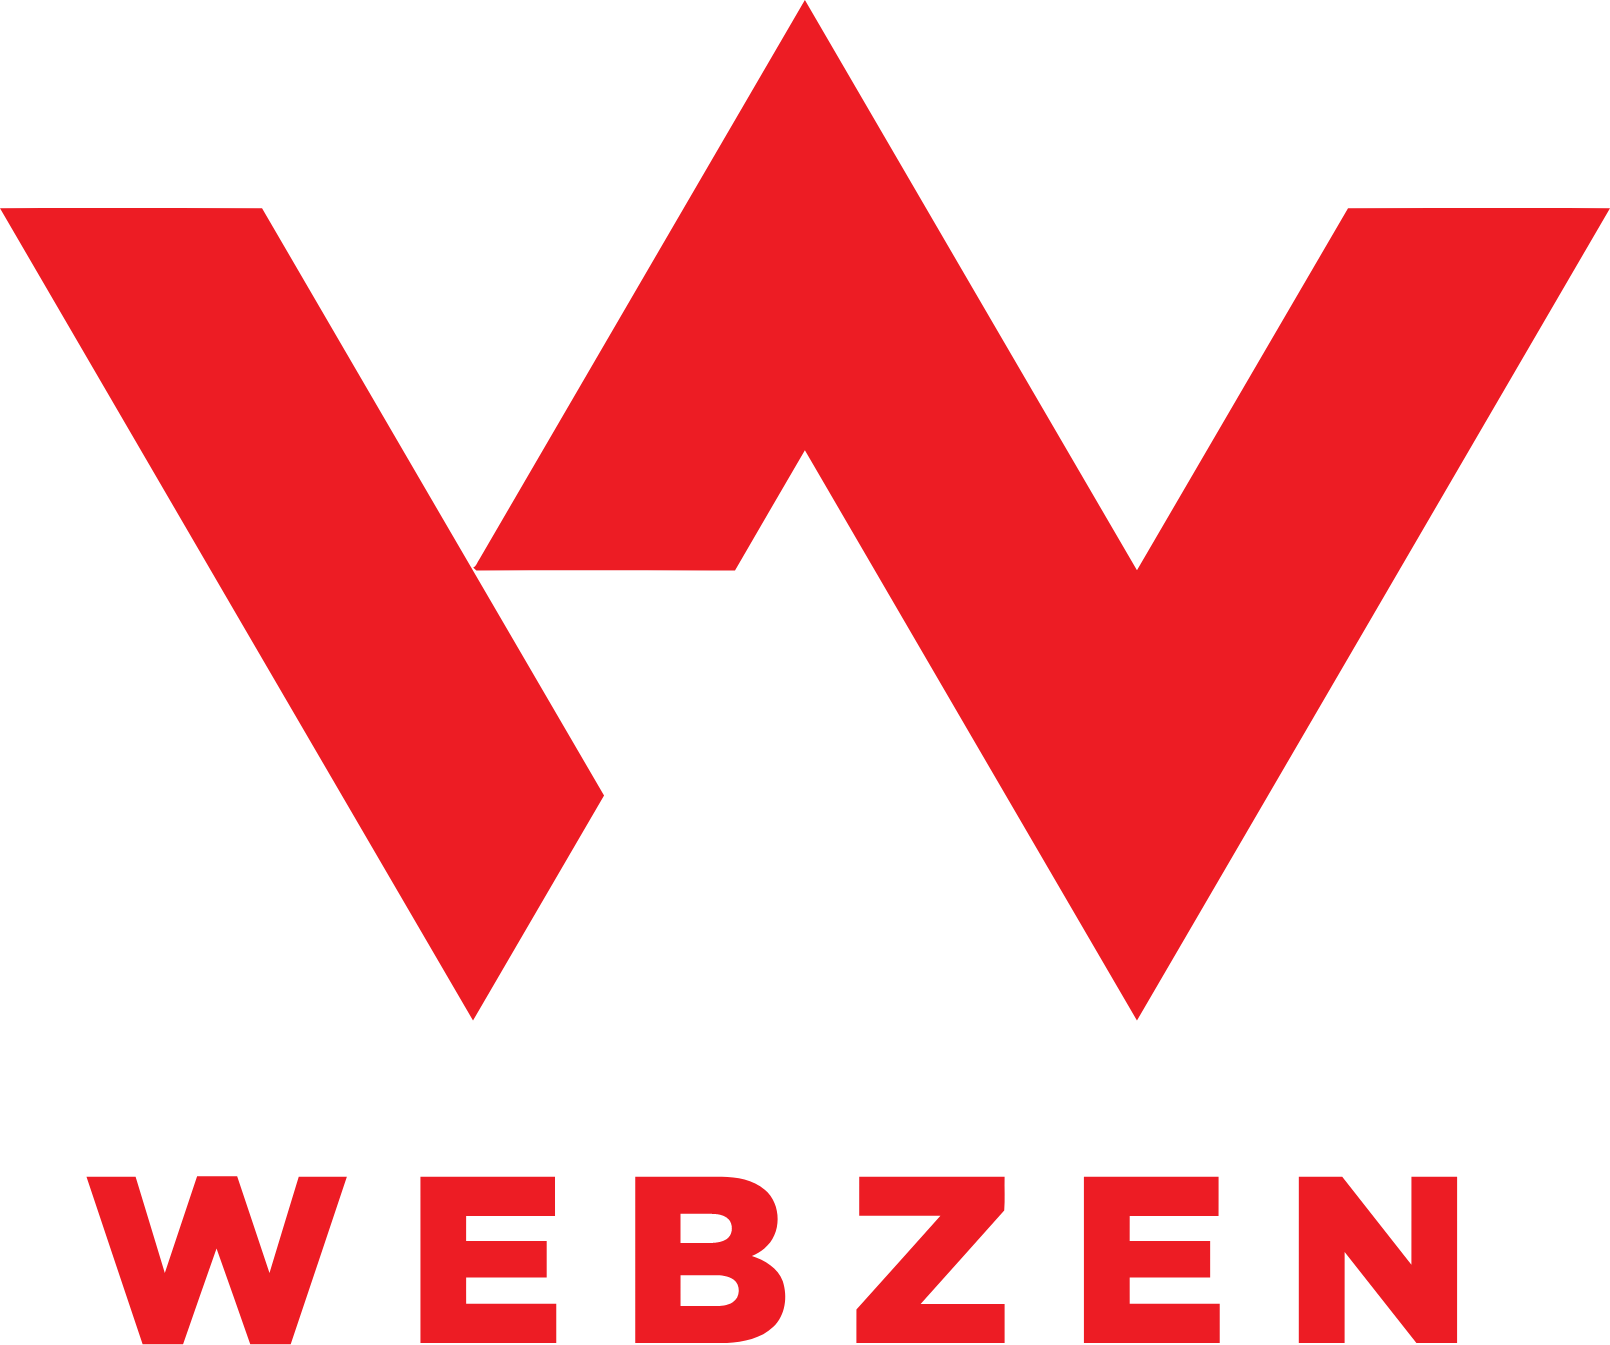 Webzen logo large (transparent PNG)